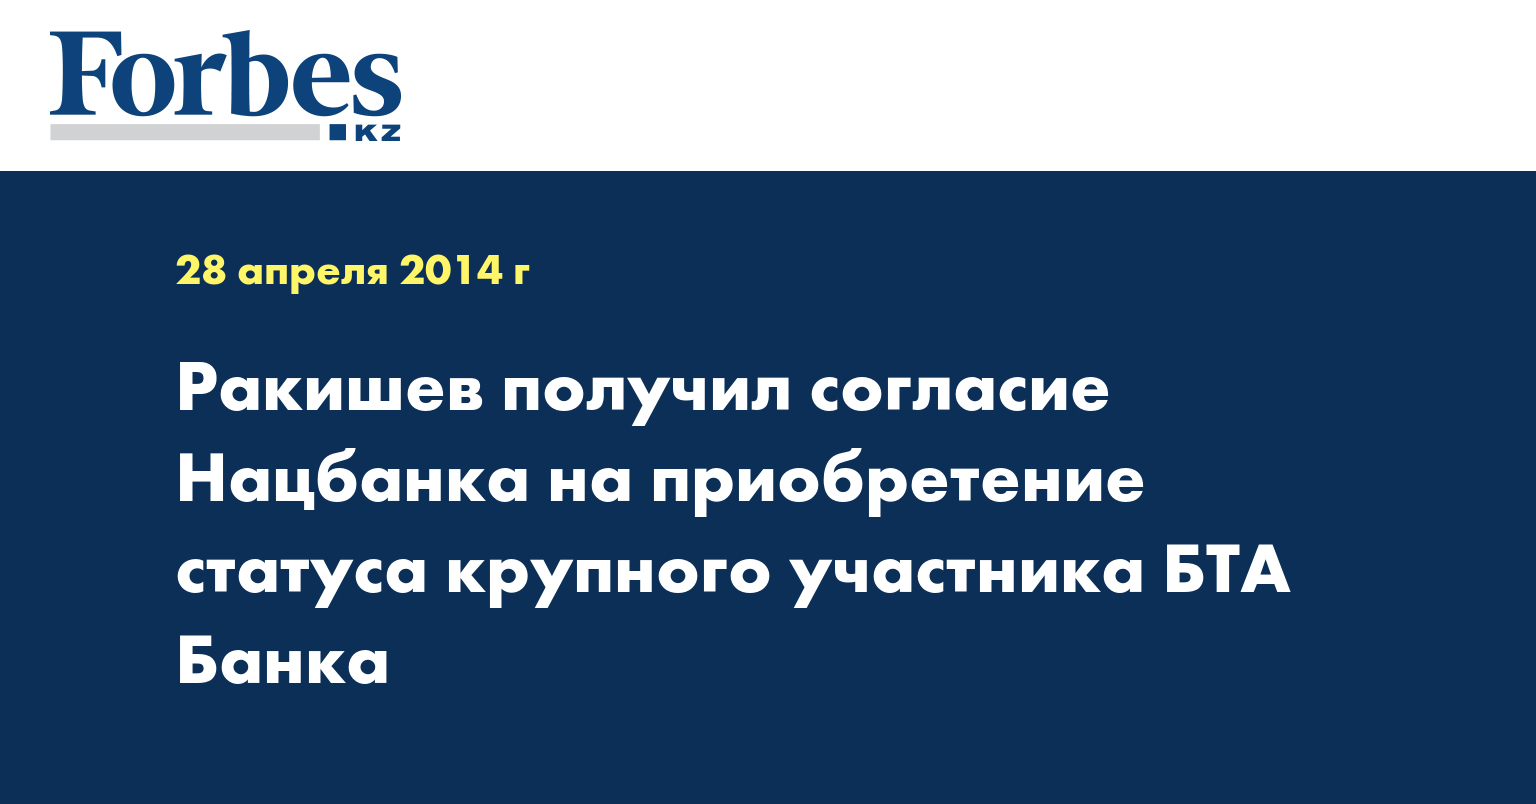 Ракишев получил согласие Нацбанка на приобретение статуса крупного участника БТА Банка